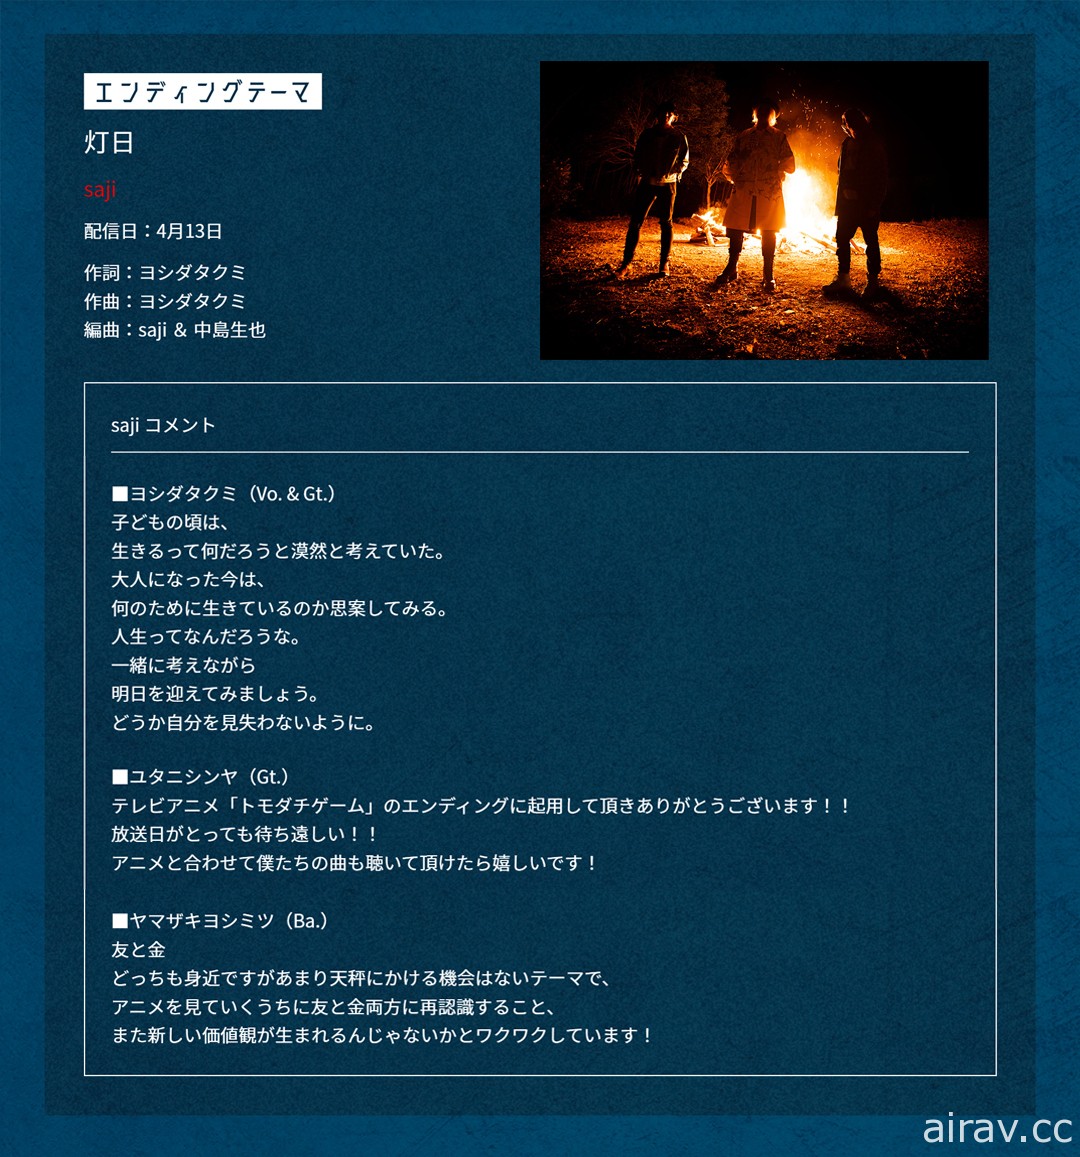 動畫《朋友遊戲》釋出首波宣傳影像與追加聲優名單 預定 4 月 5 日開播